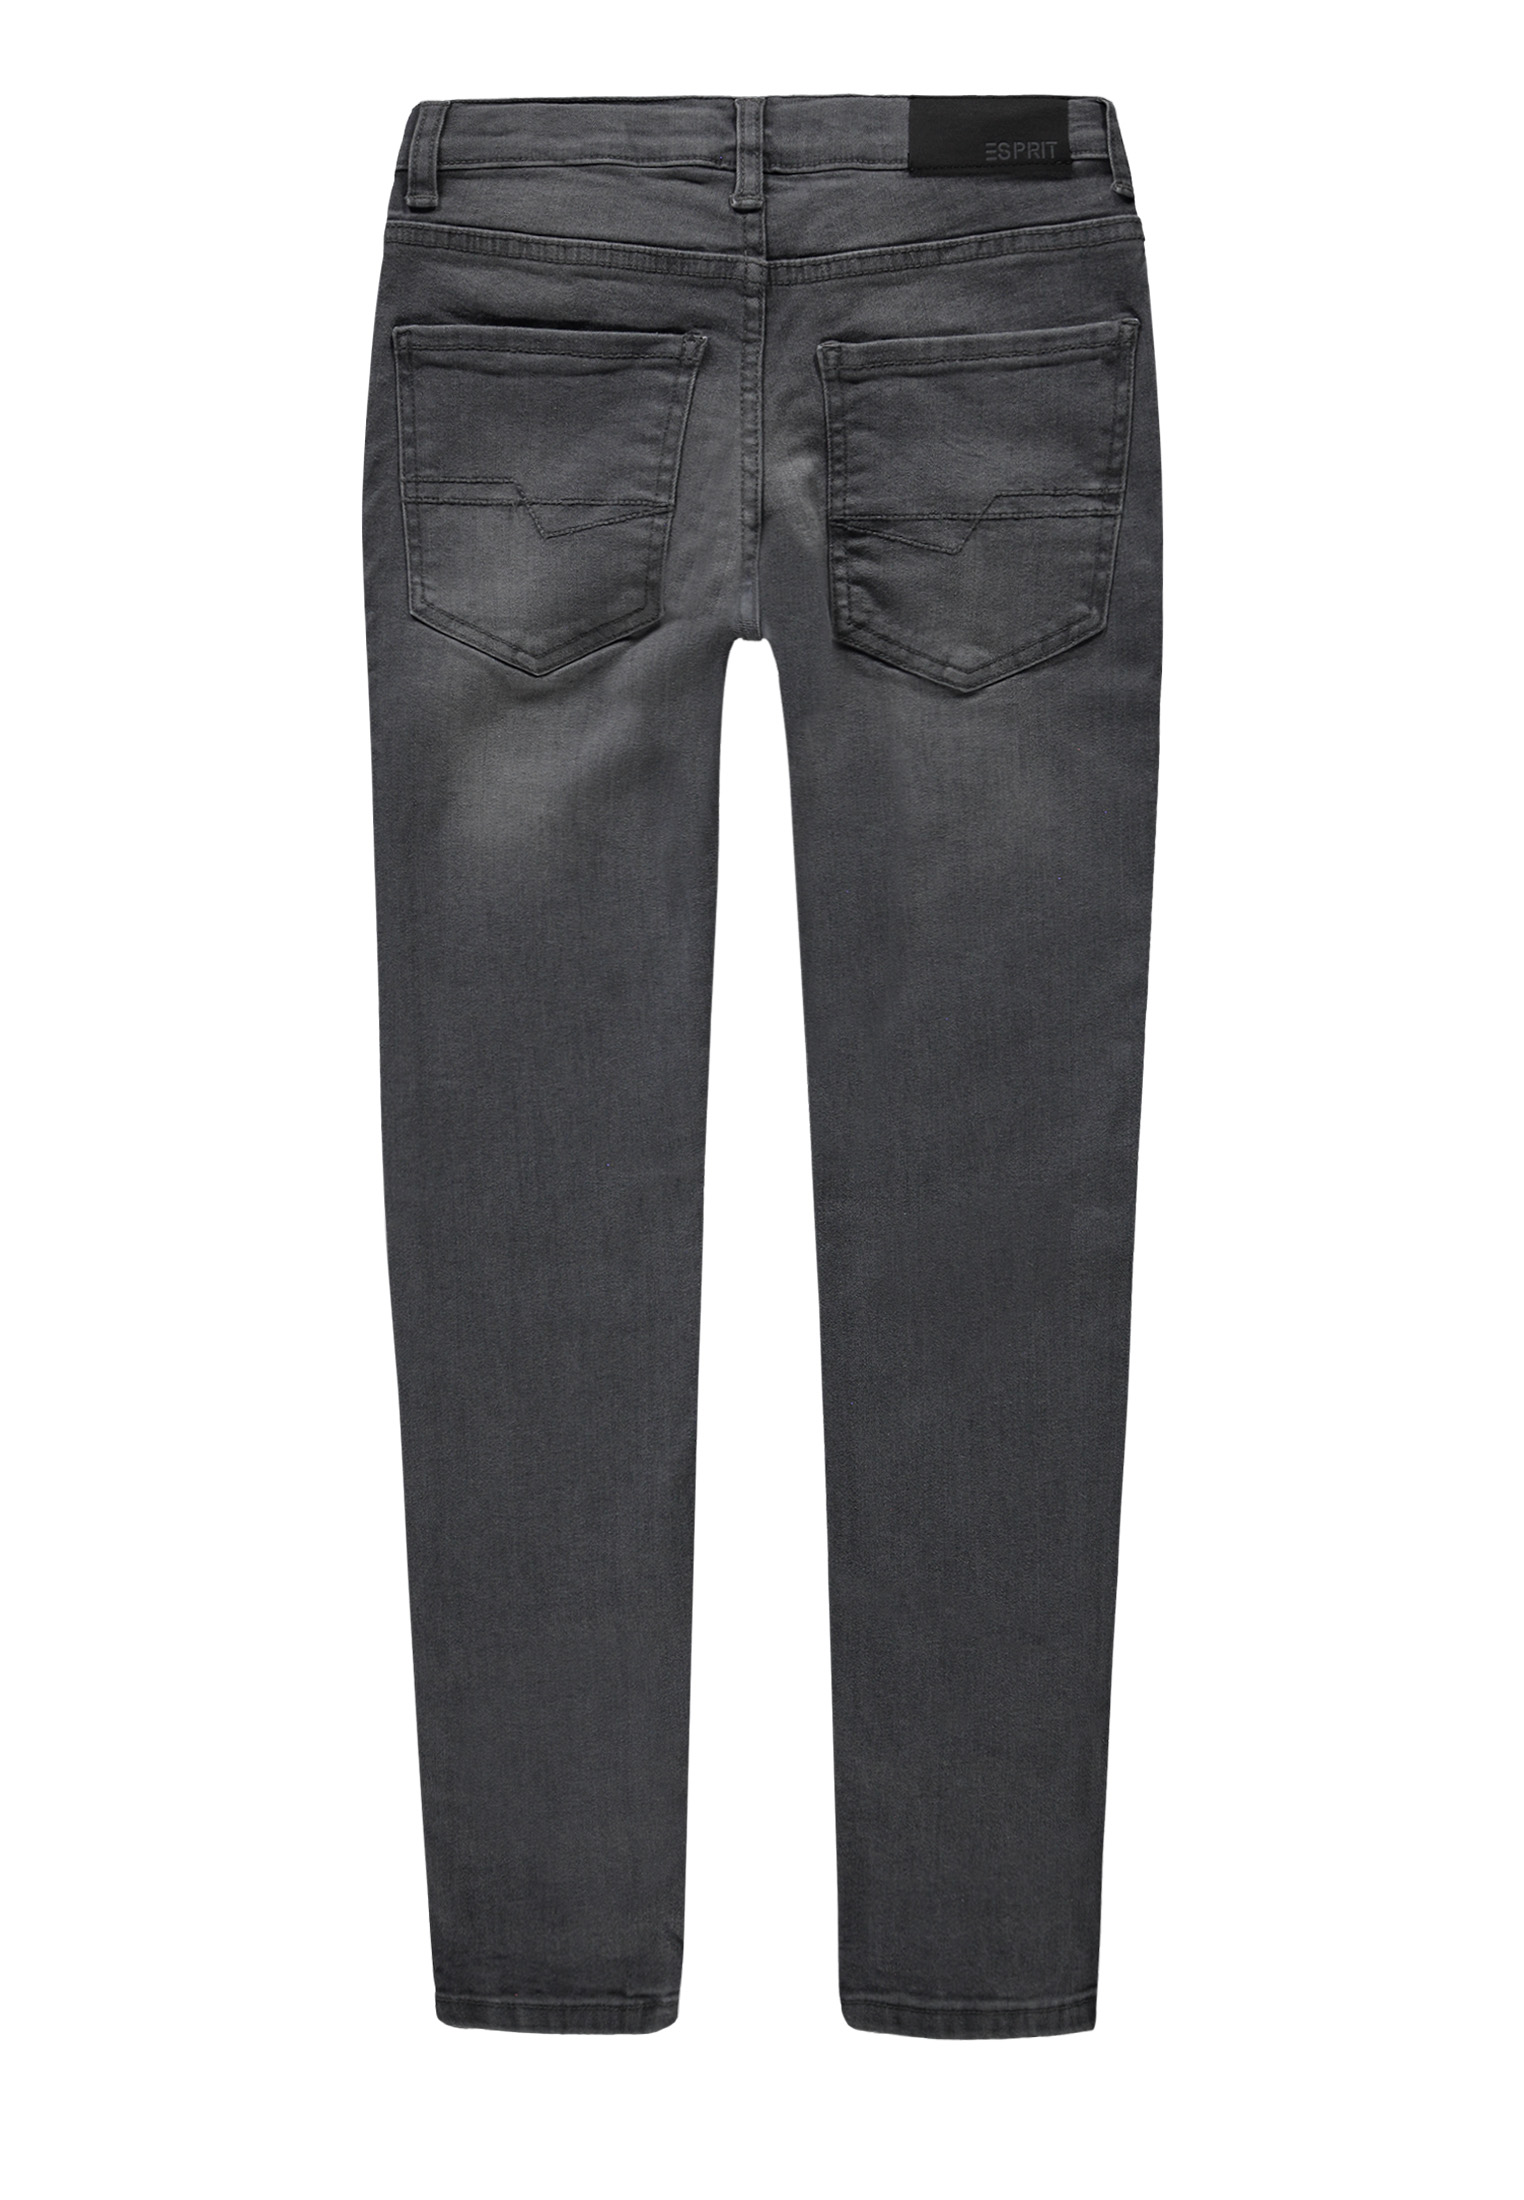 Chłopięce spodnie jeansowe, Wide Fit, szare, Esprit